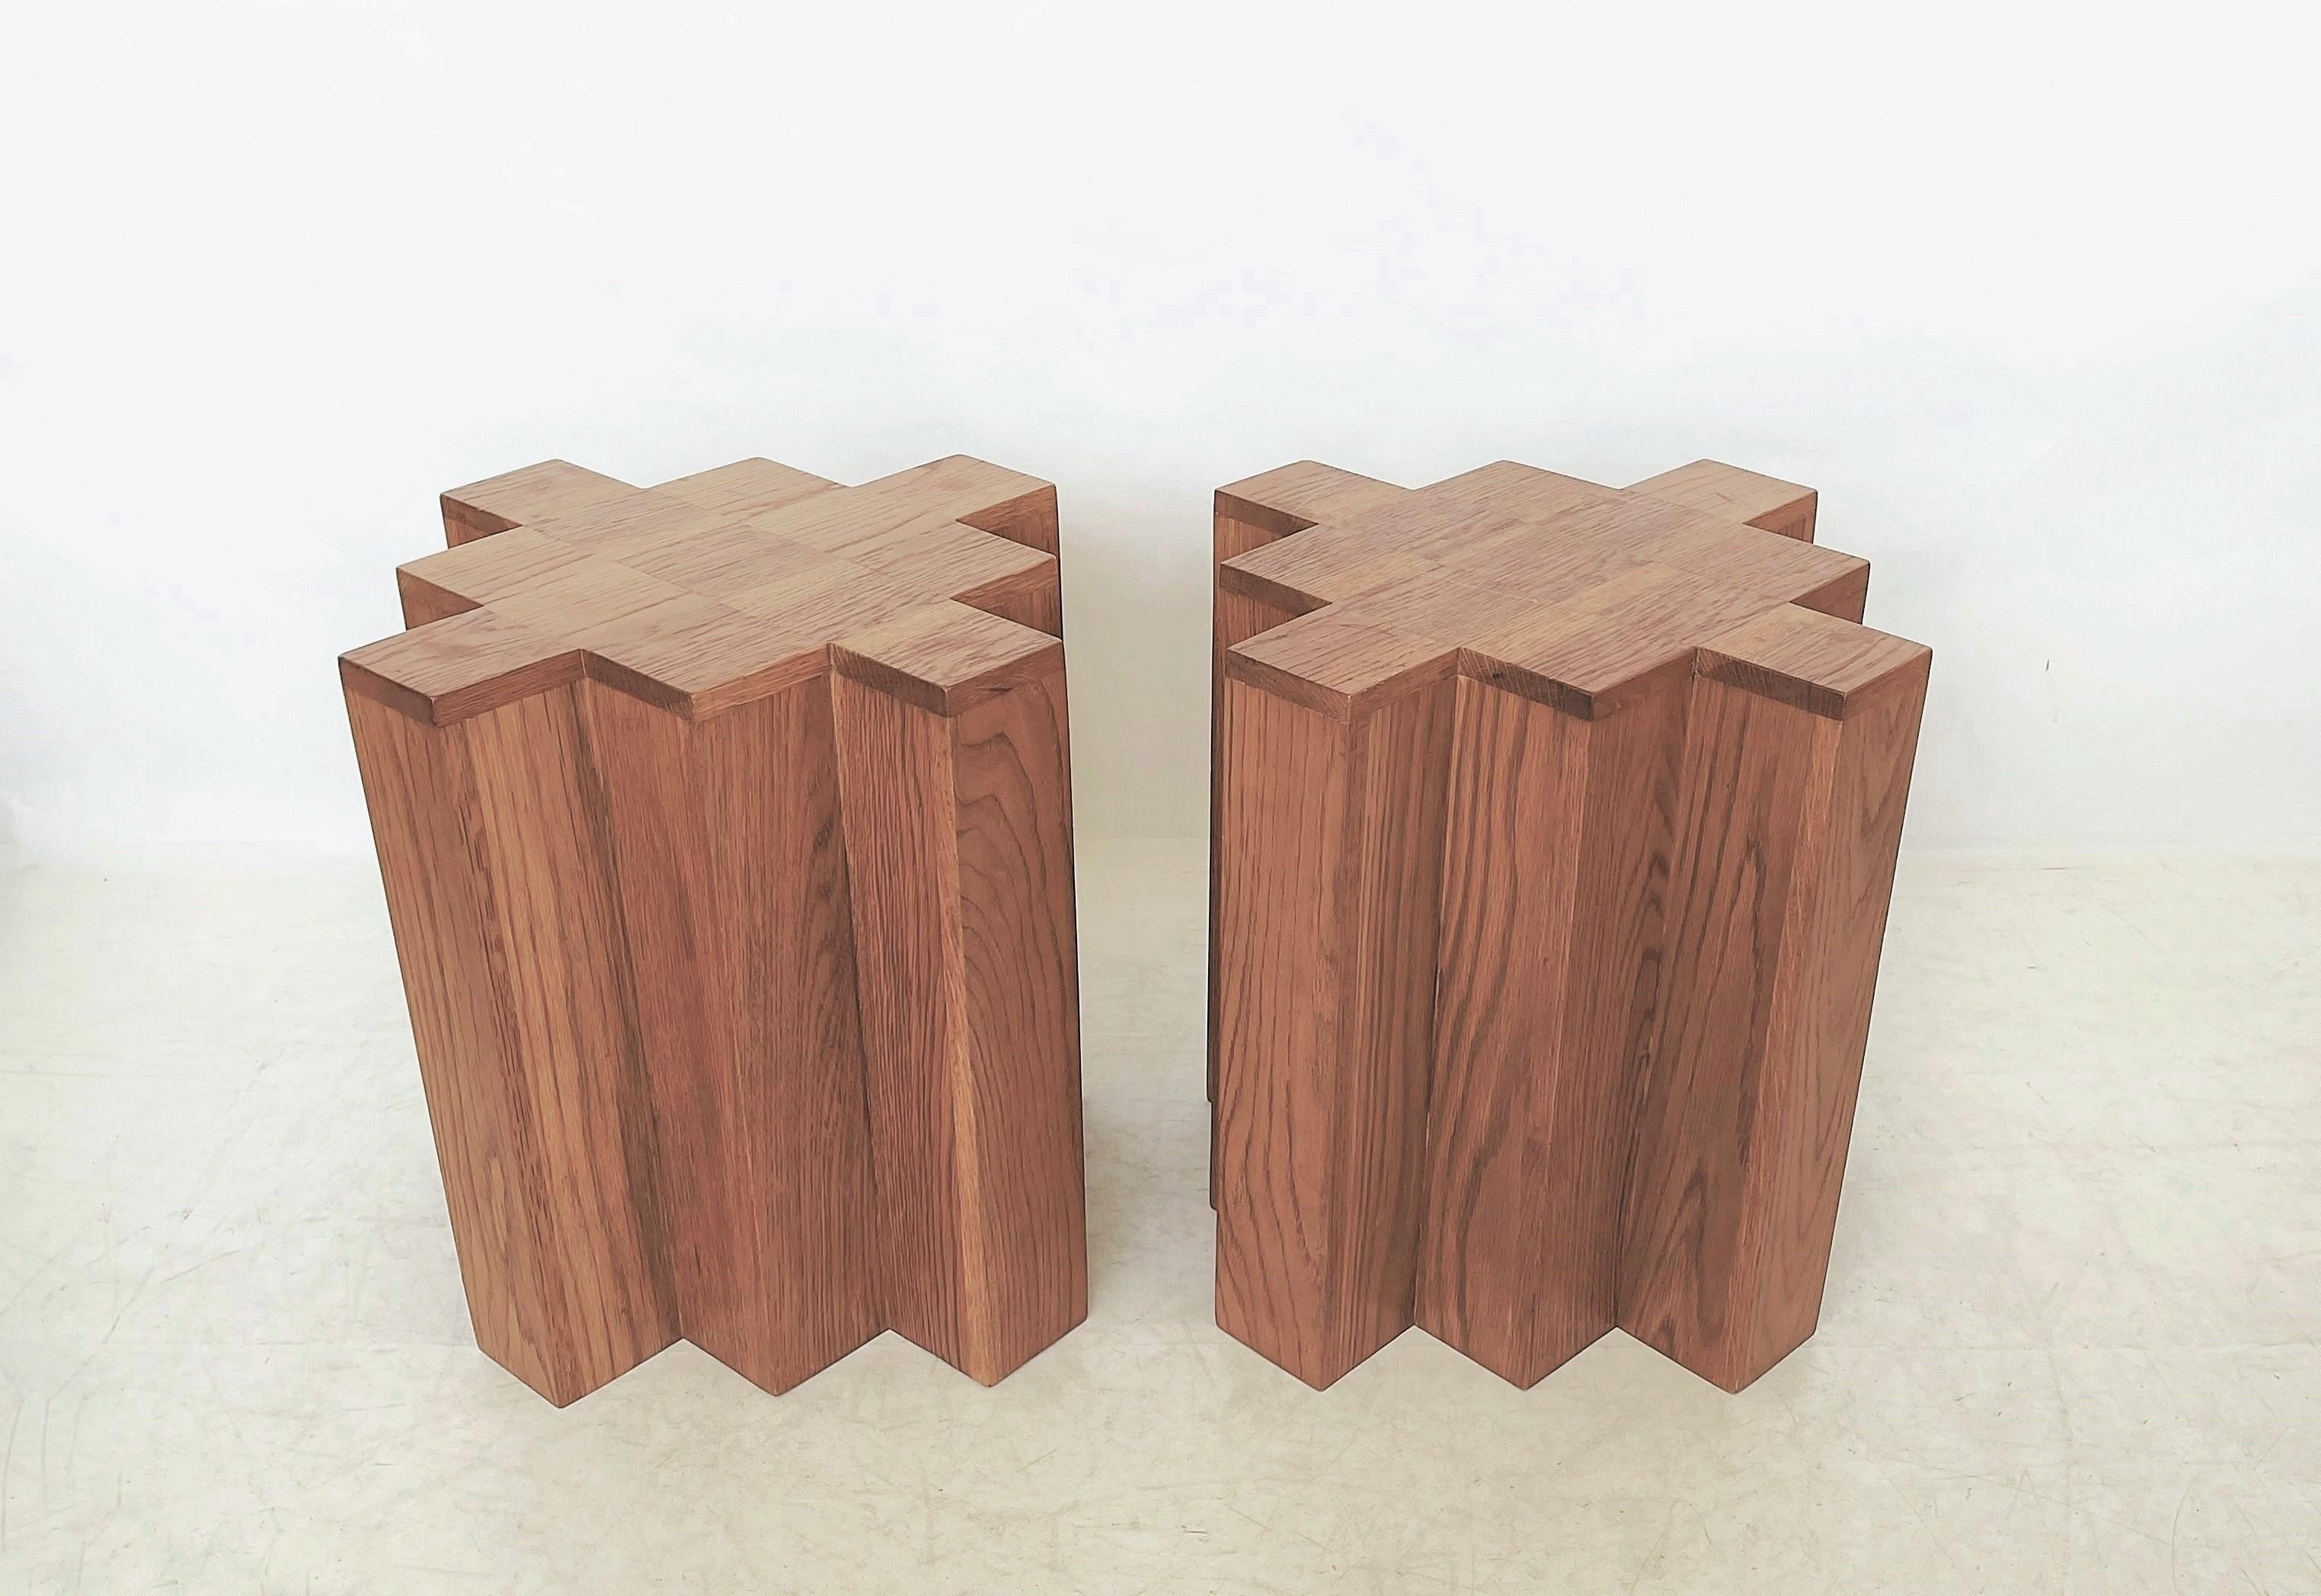 Paire de tables d'appoint modernes et sculpturales. La forme géométrique forte du cube avec des coins symétriques répétitifs en retrait est accentuée par le grain distinctif et récurrent du bois de chêne naturel. De grandes proportions. Une patine